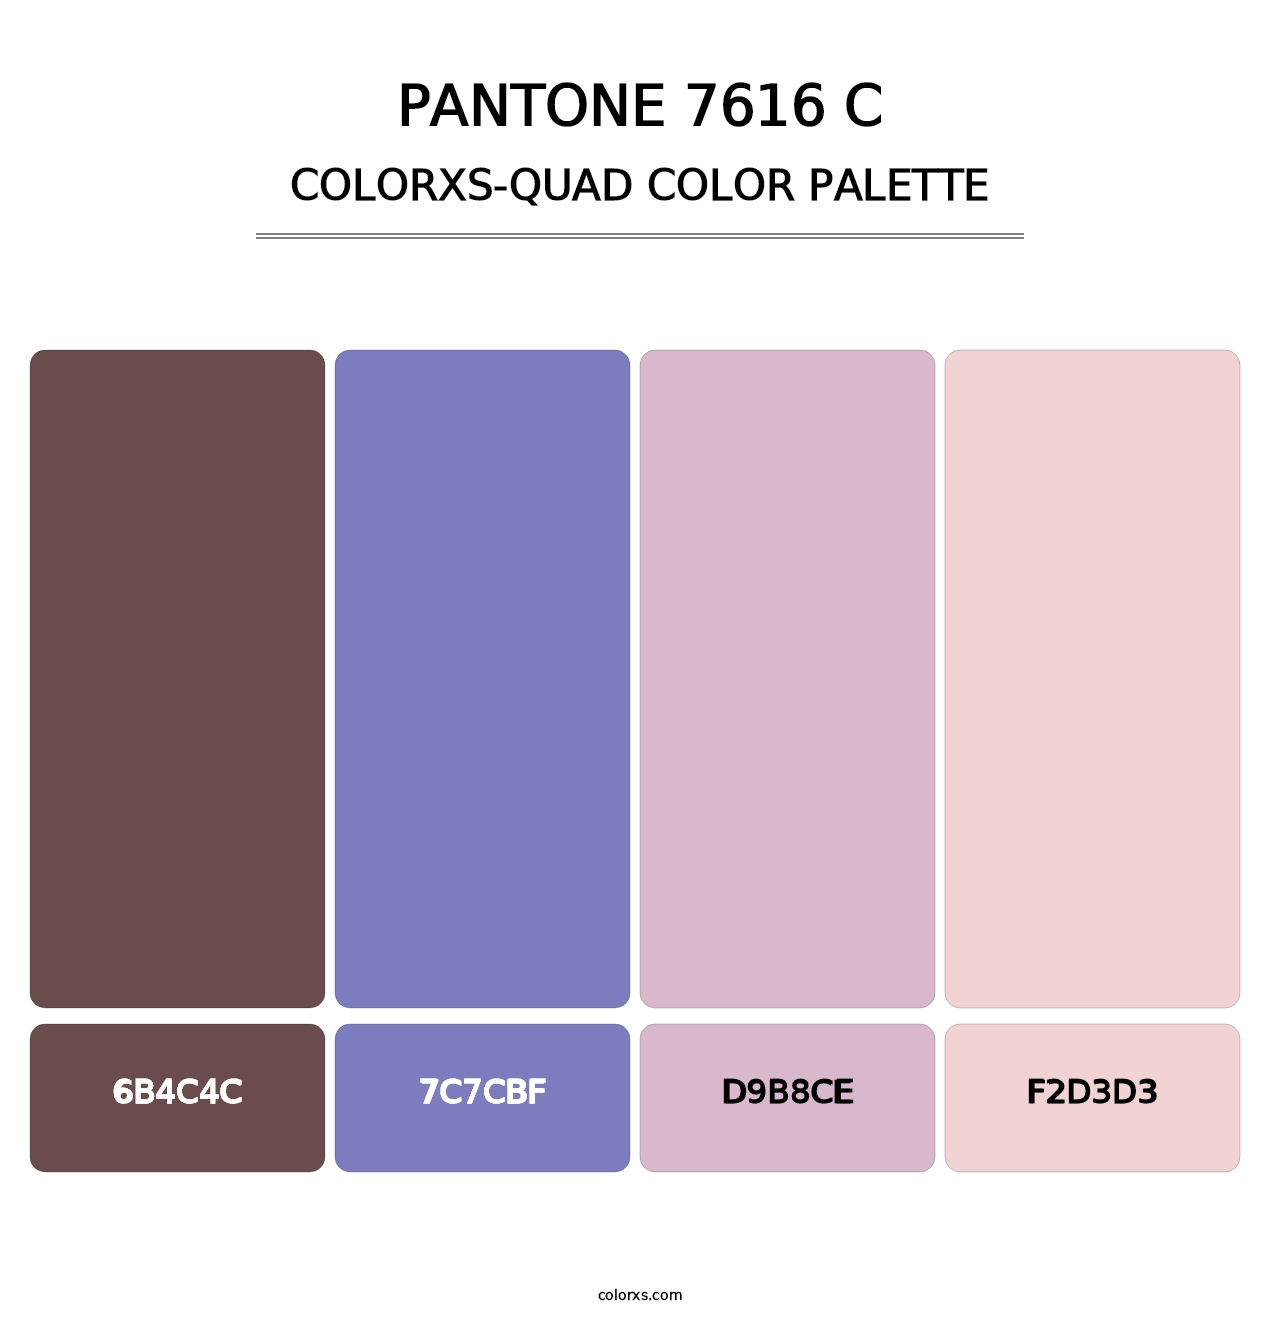 PANTONE 7616 C - Colorxs Quad Palette